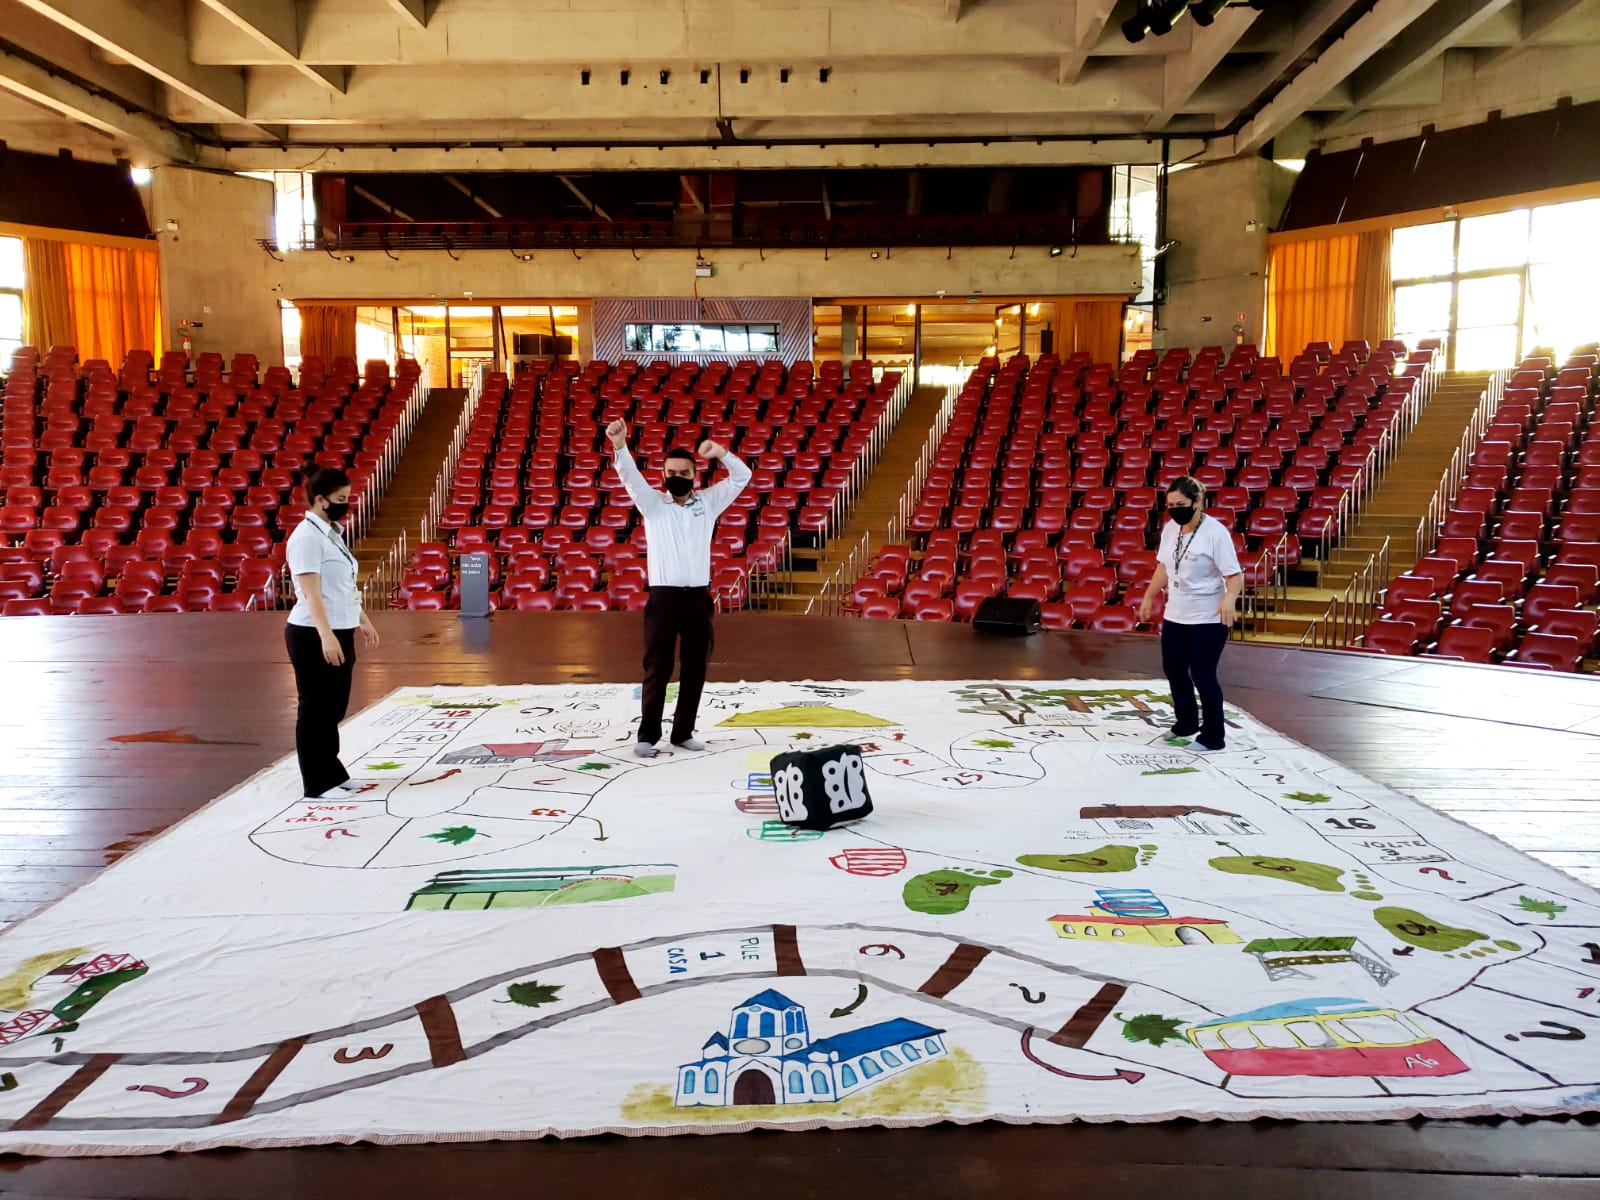 Na imagem há um jogo de tabuleiro gigante, feito de tecido, sobre o palco do Auditório Claudio Santoro. Três pessoas estão de pé sobre o tecido jogando uma partida.